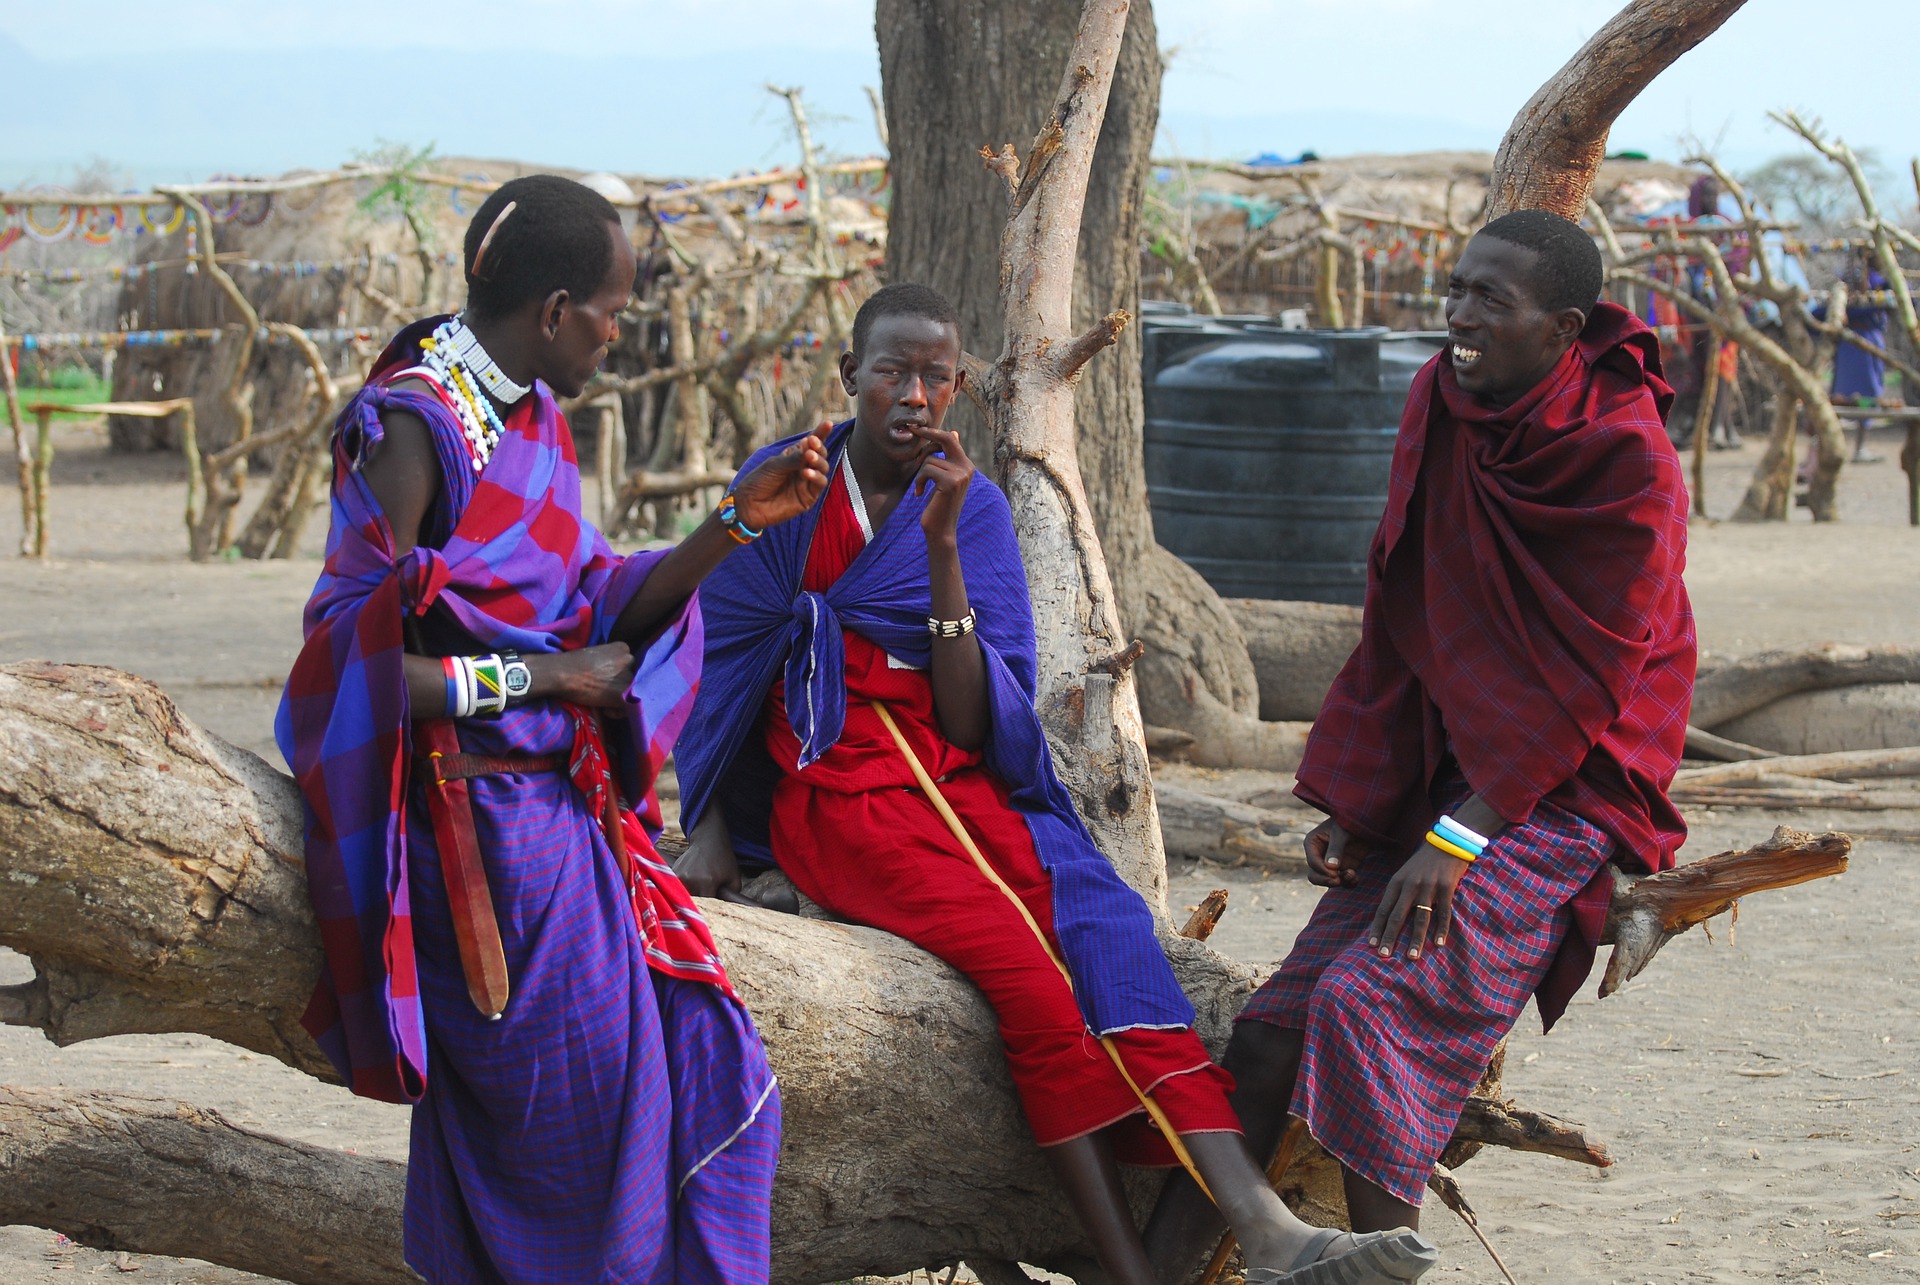 Maasai Men, Indigenous people